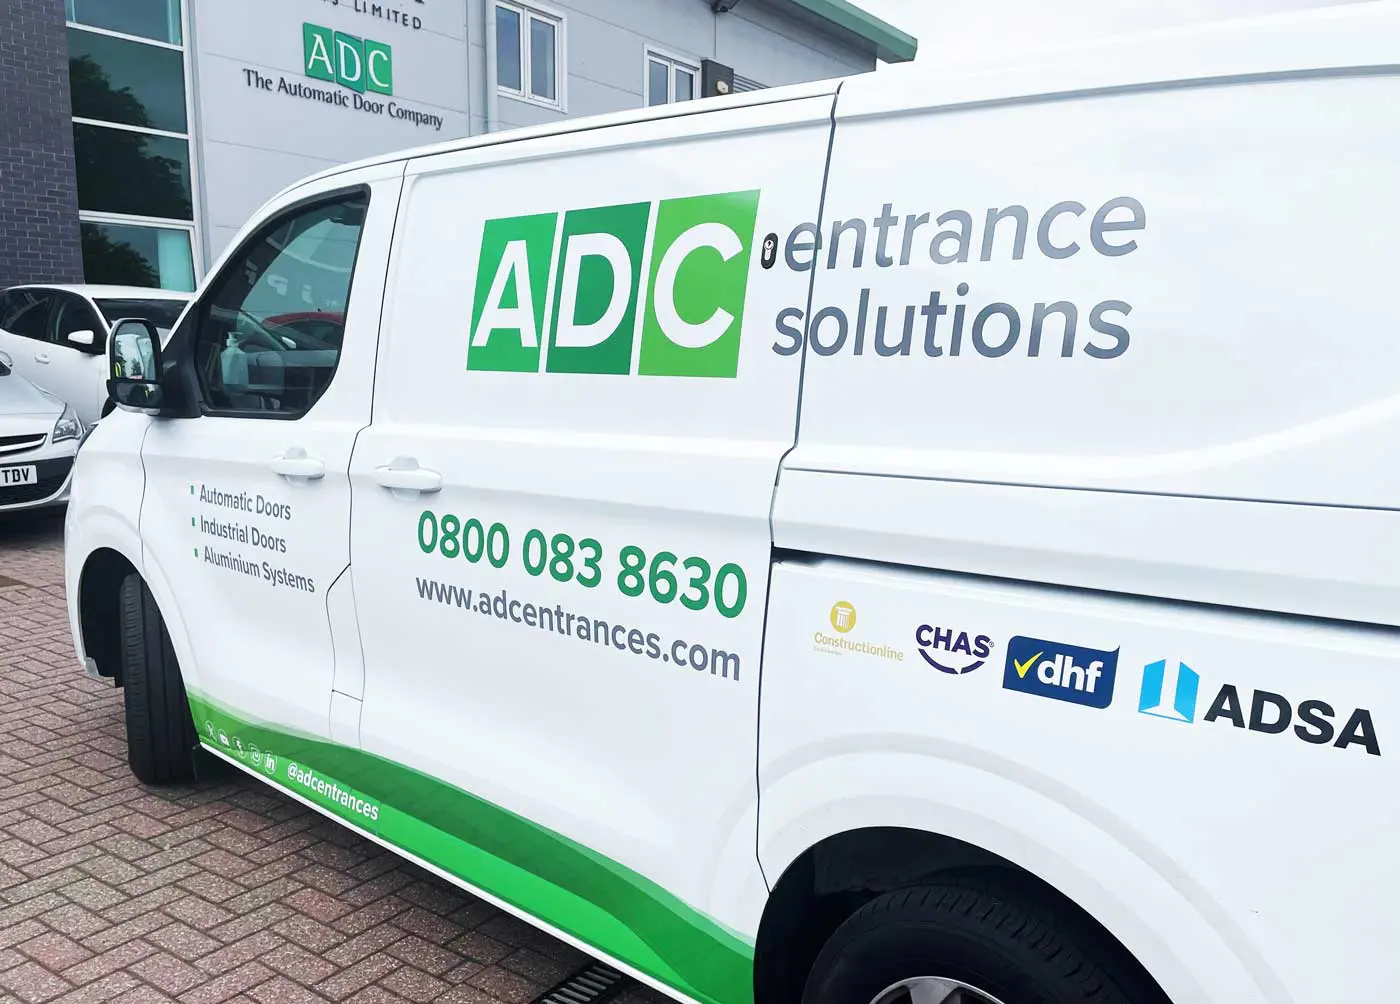 ADC van receives new branding